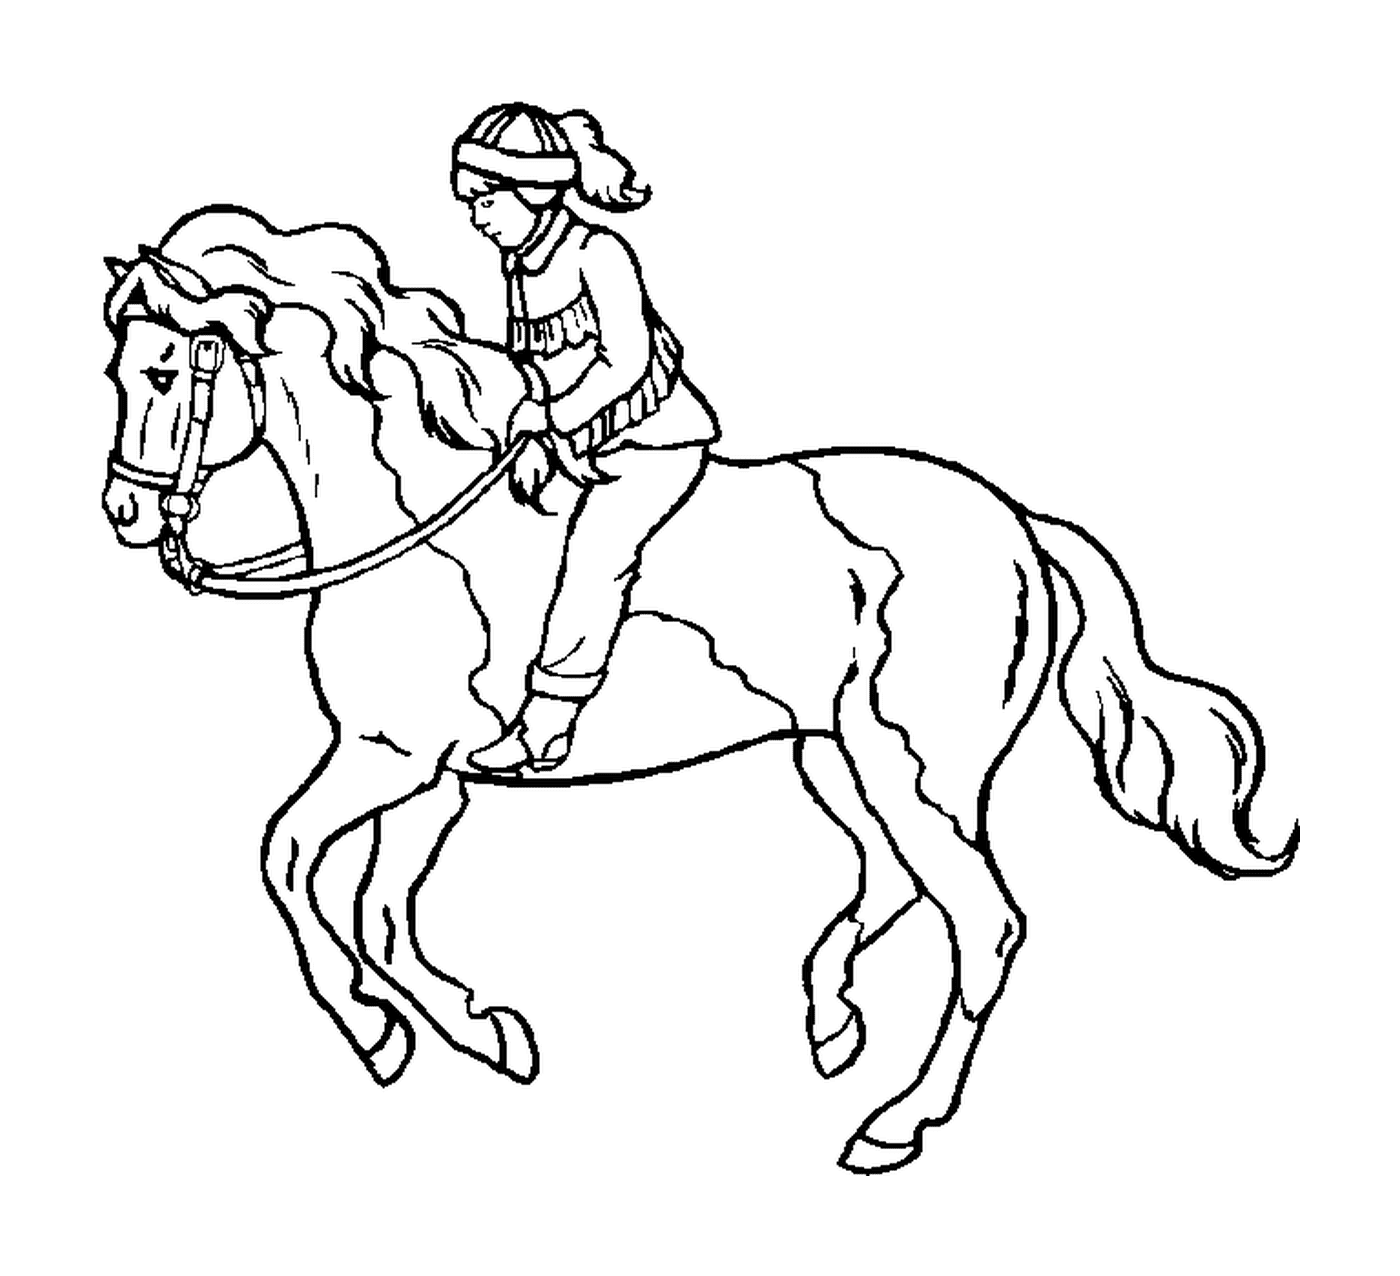  Reiter mit seinem Helm, auf seinem Destrier 